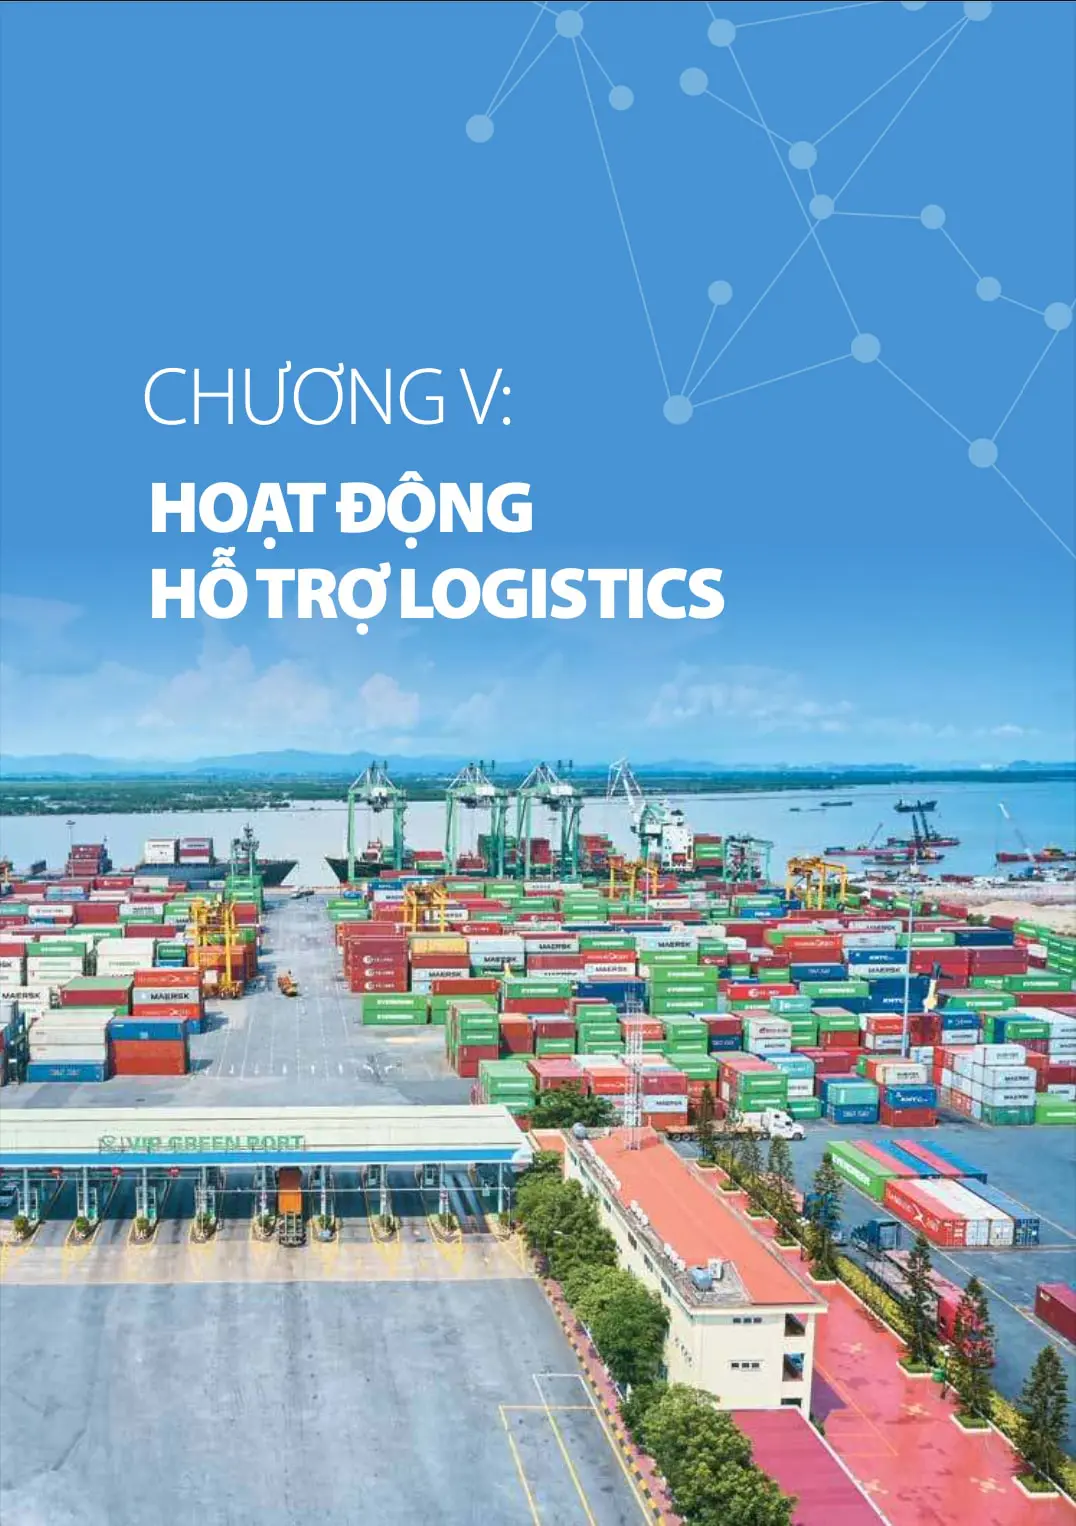 Chương 4 báo cáo logistics Việt Nam 2020: Hoạt động hỗ trợ logistics